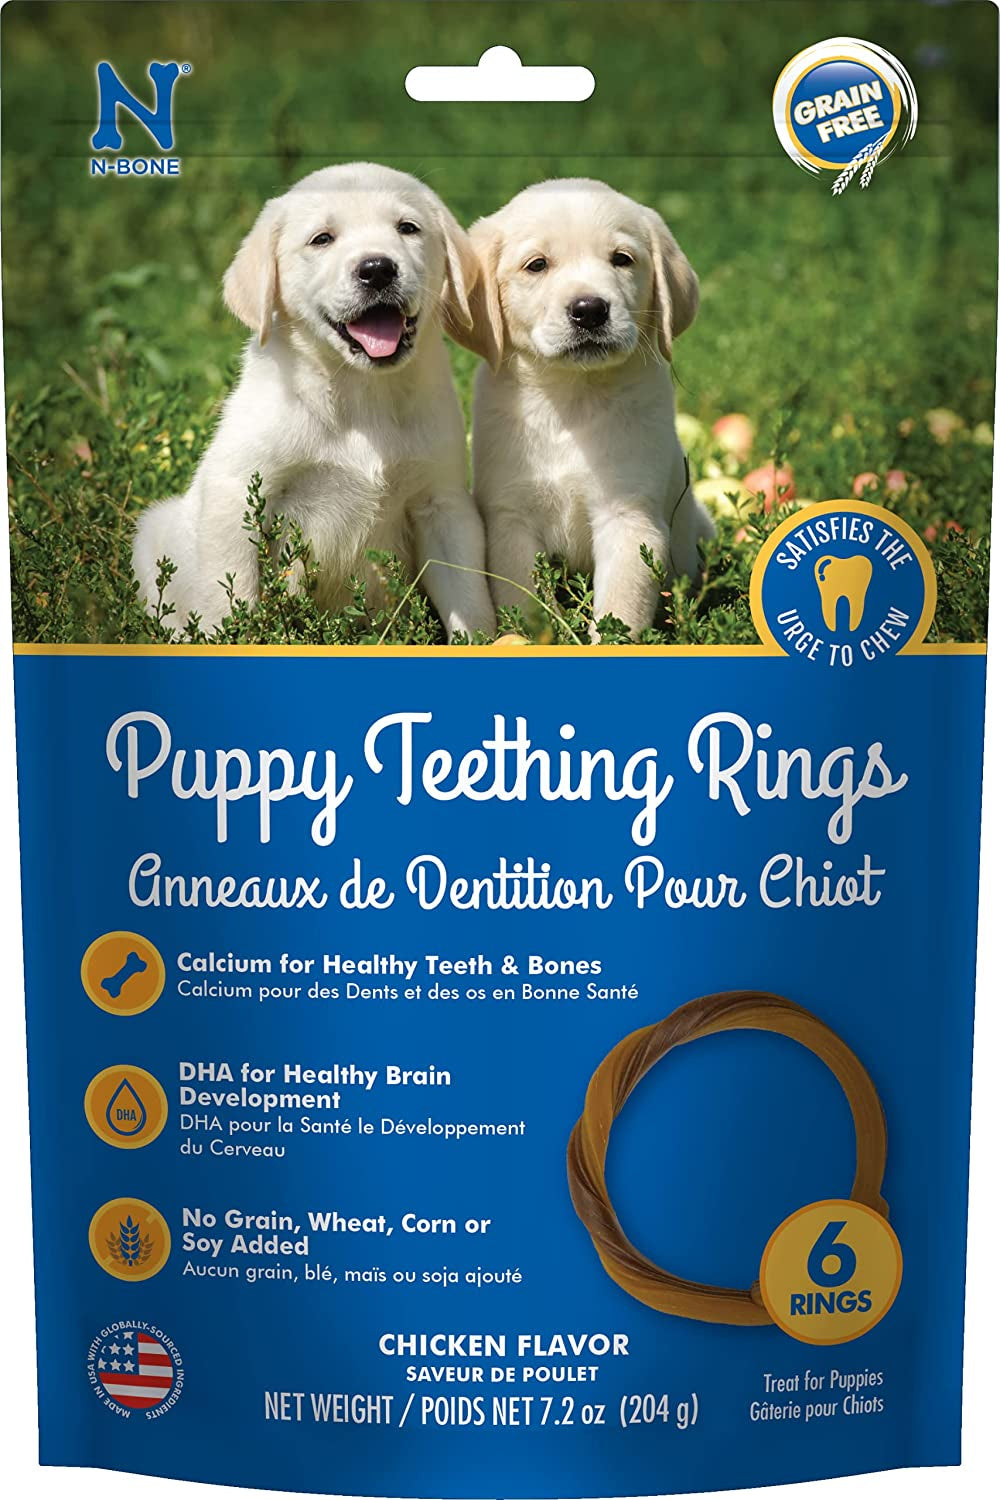 N-Bone Grain Free Puppy Teething Rings Chicken Flavor